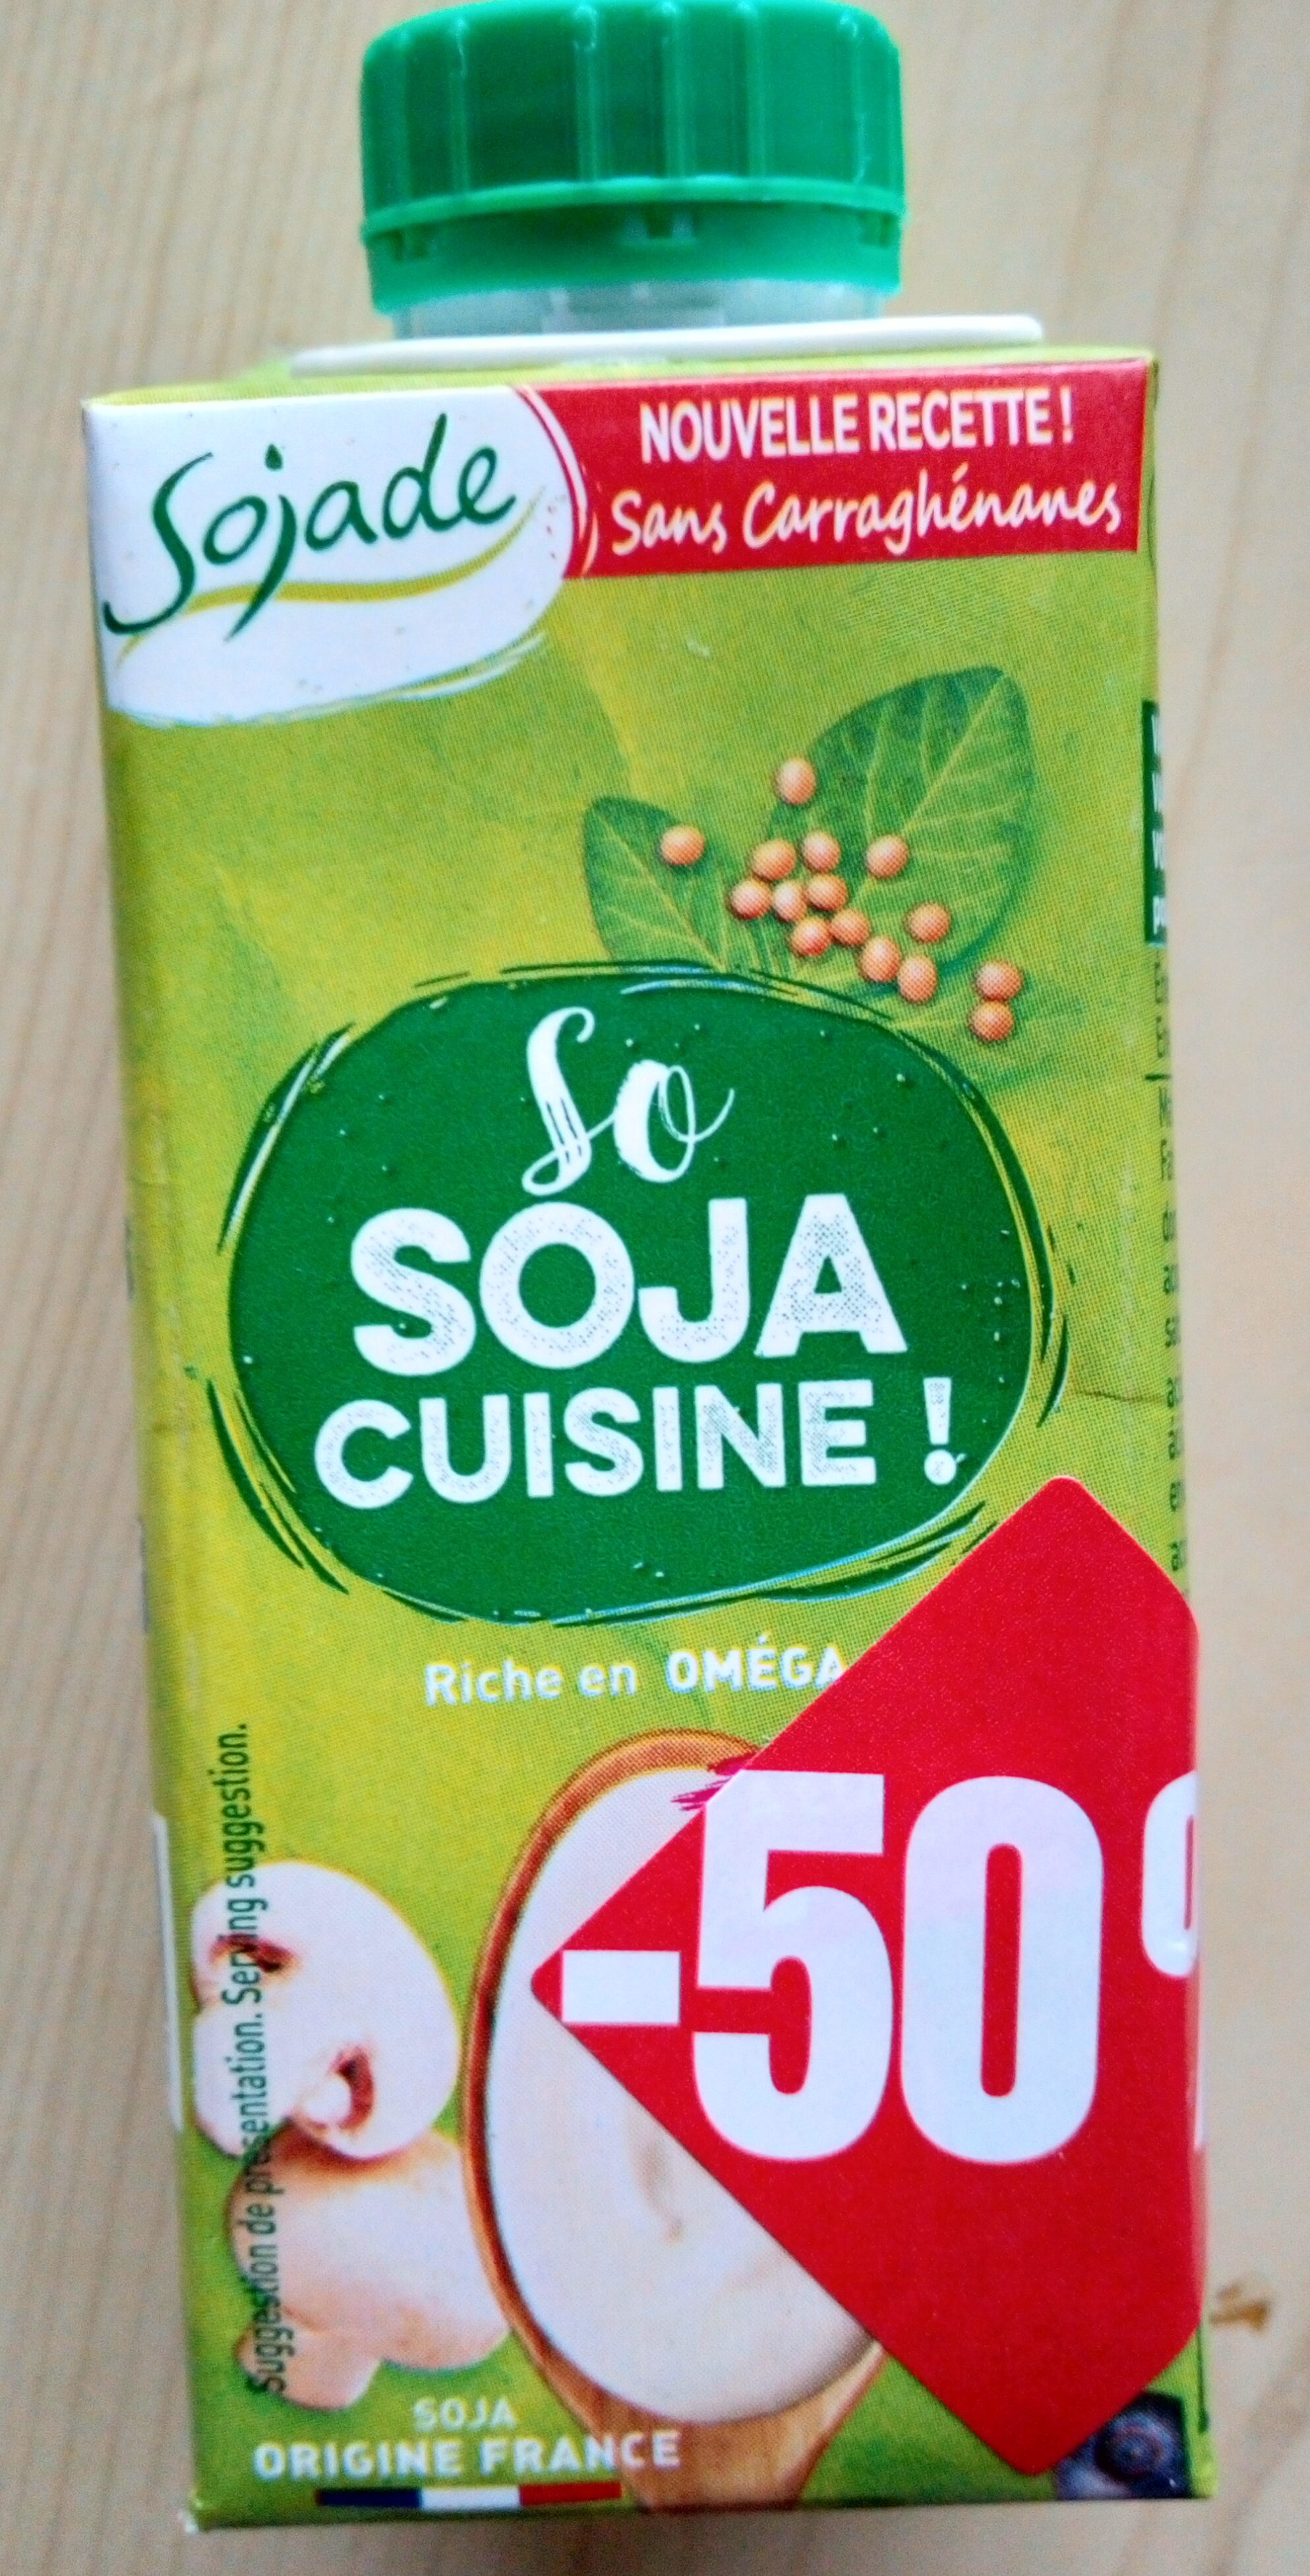 So Soja cuisine ! - Produit